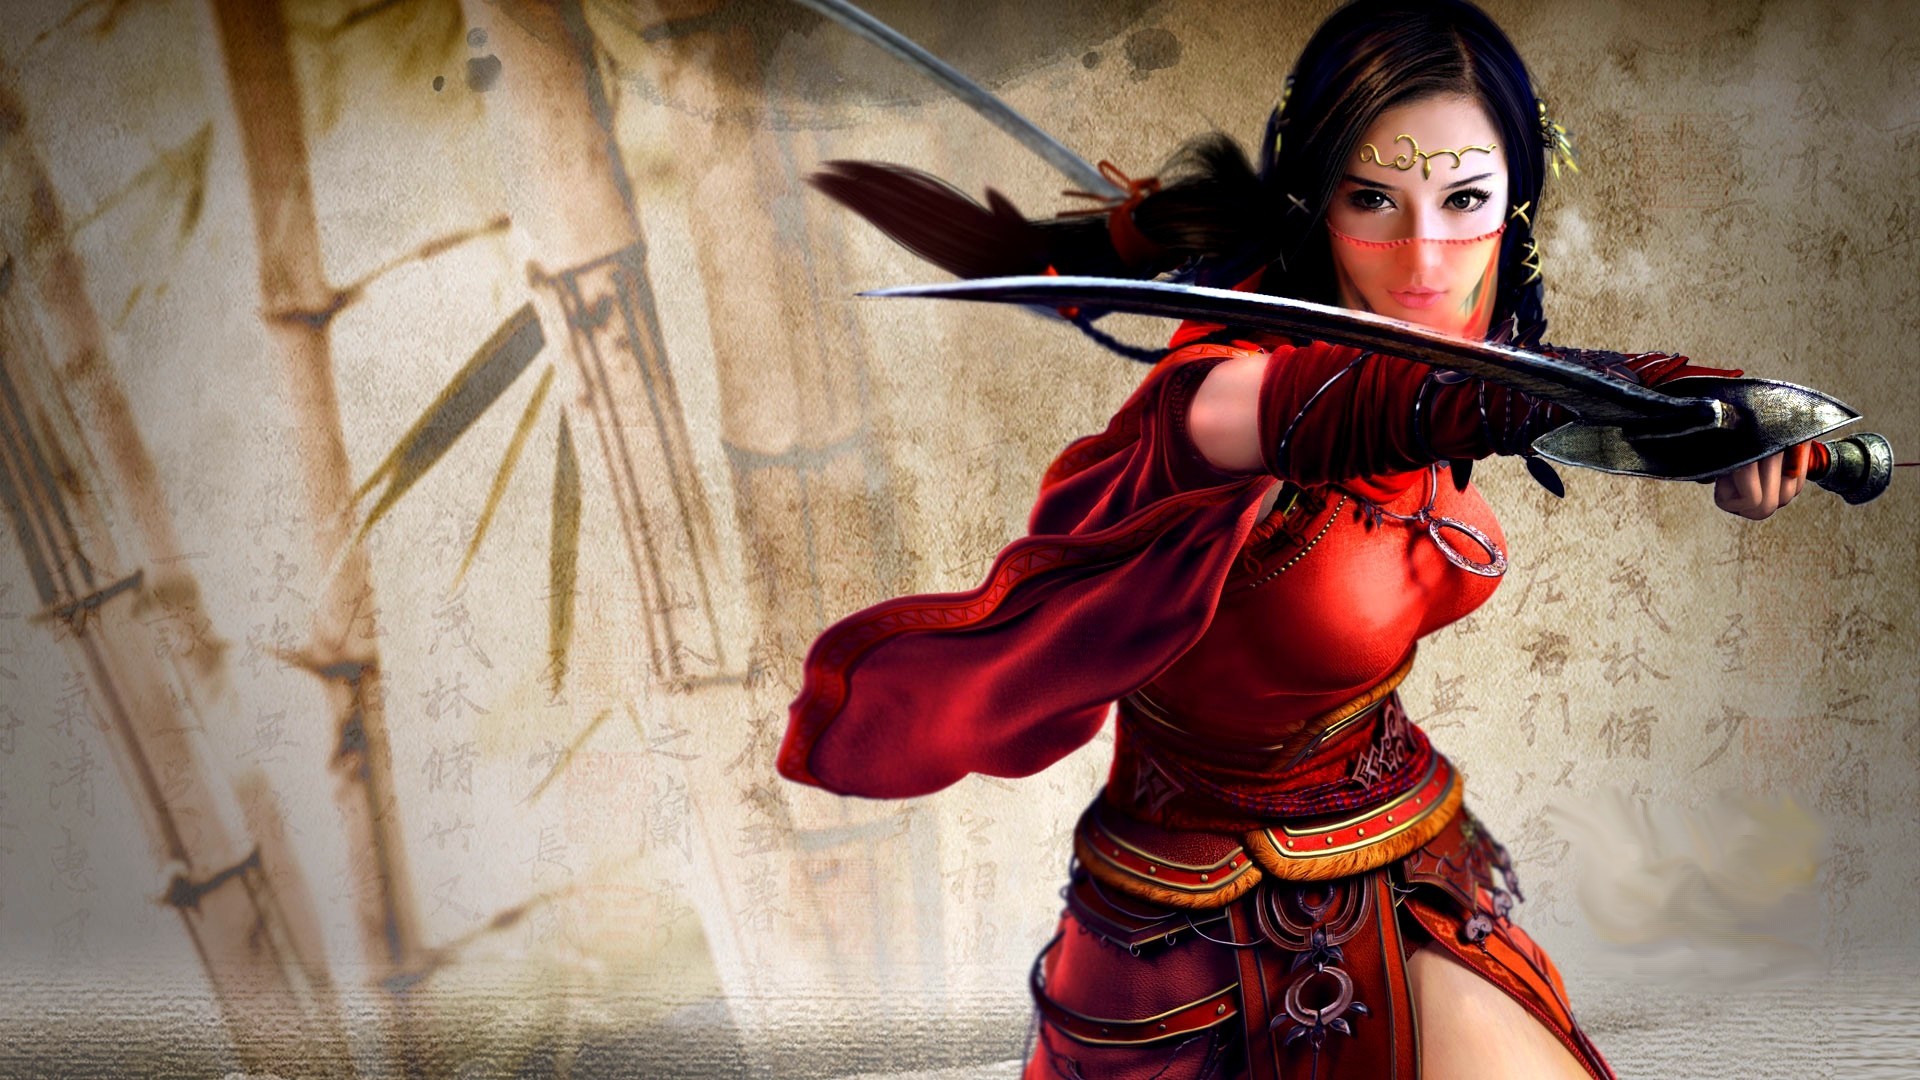 Asian Warrior Fantasy Art - HD Wallpaper 